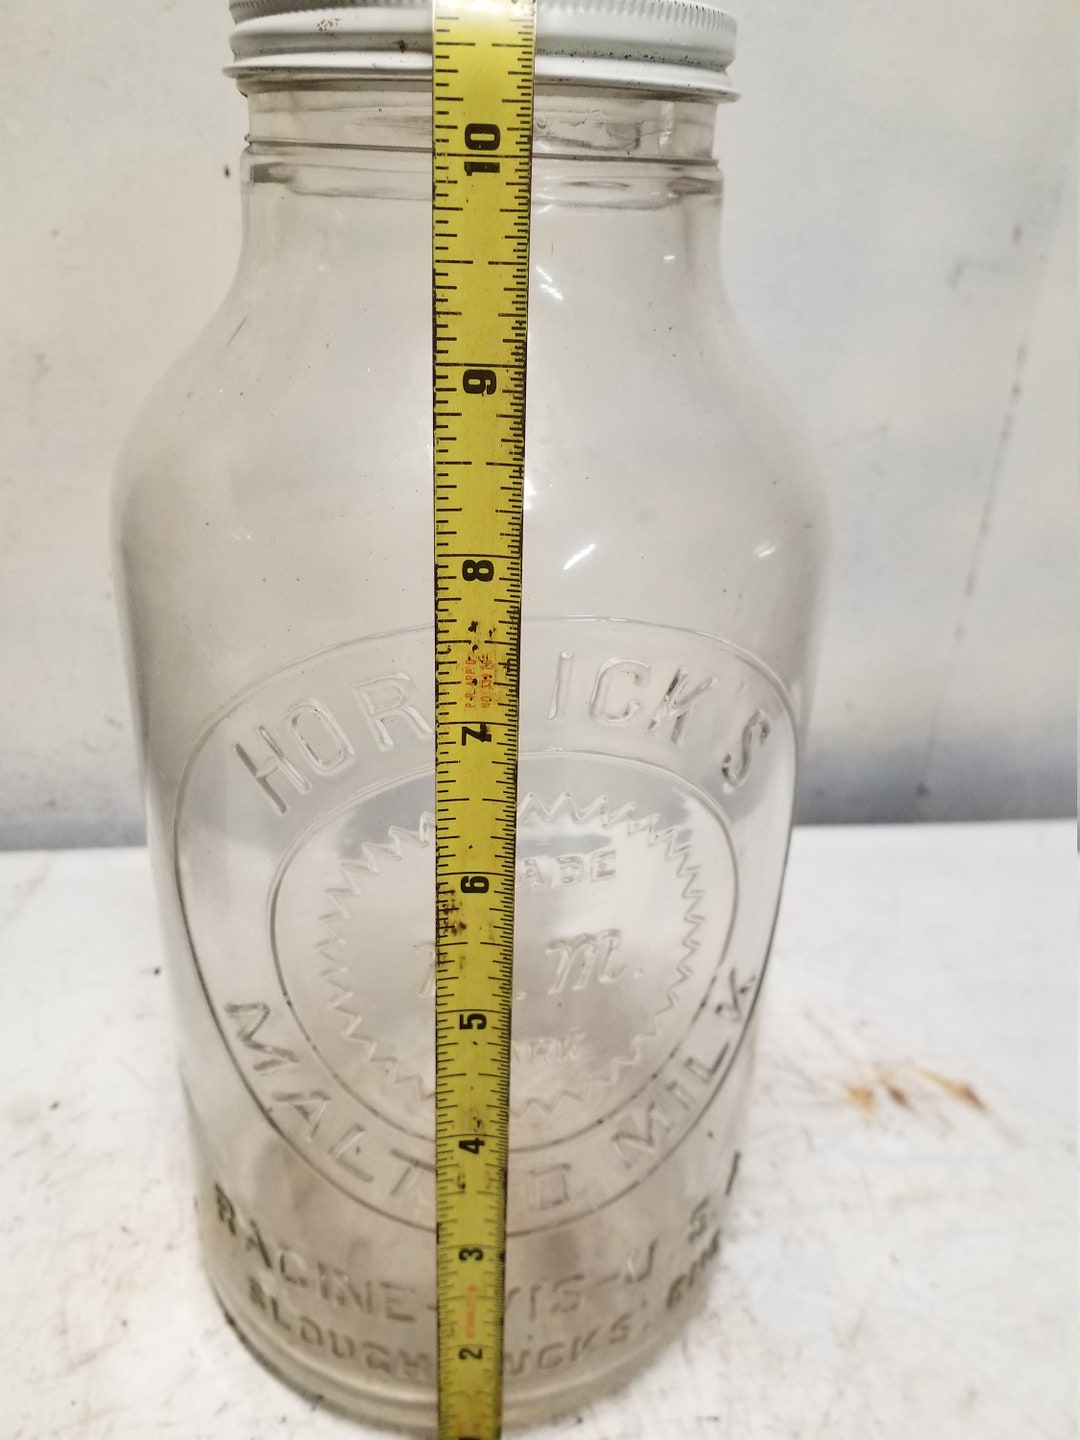 Havahart trap, knife, and vintage Horlick's malted milk bottle